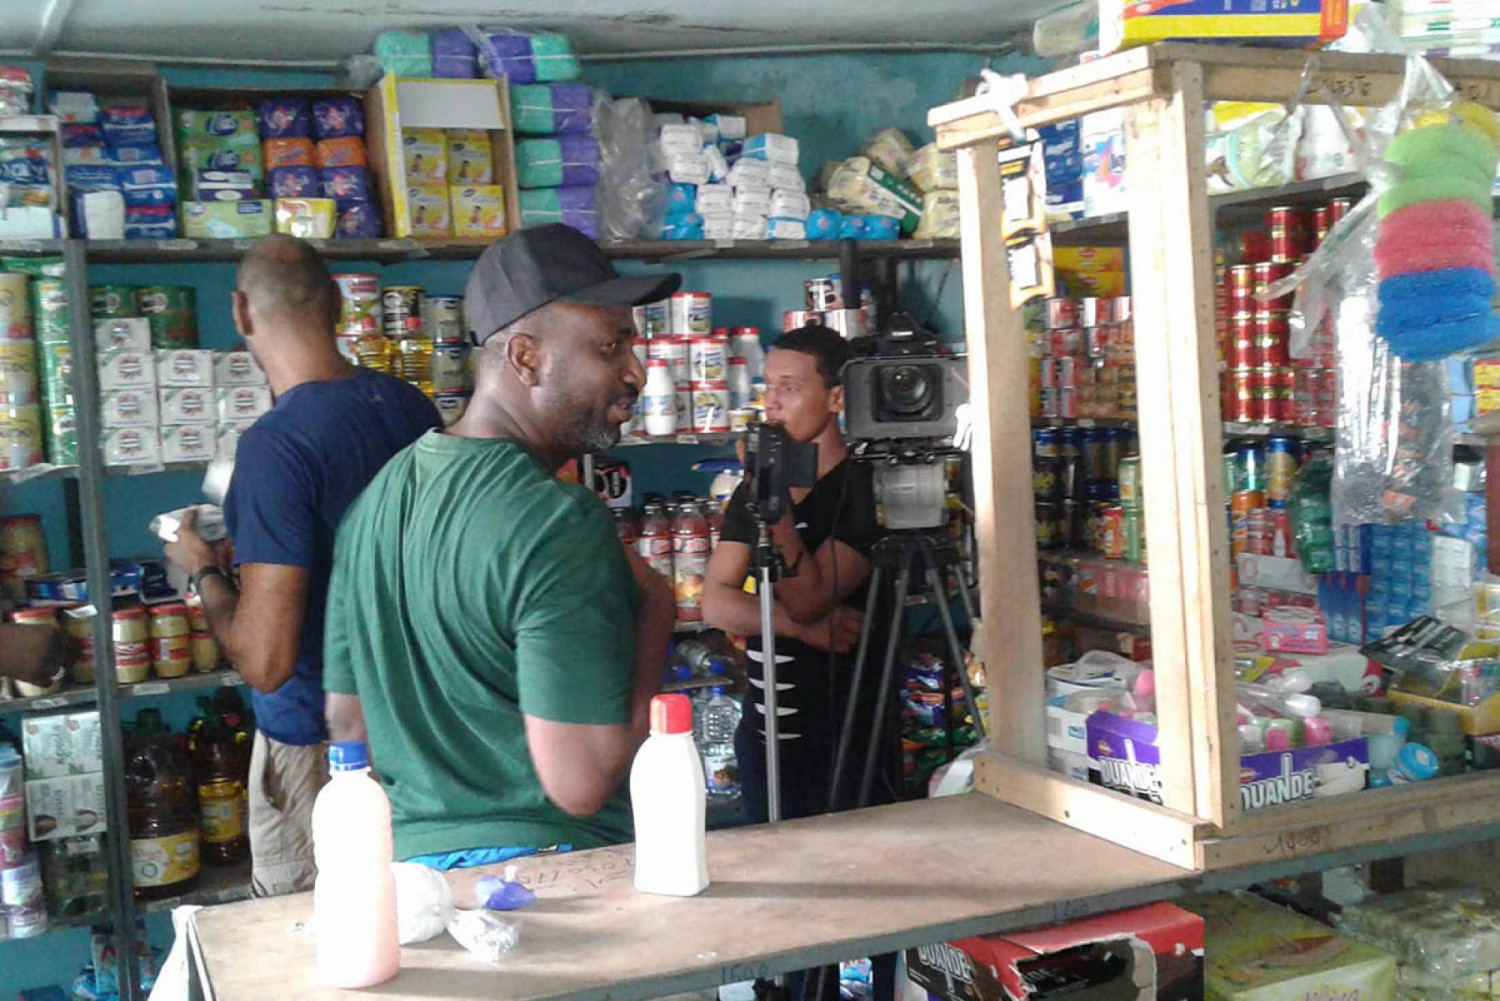 Côte d'Ivoire : Adzopé, alors qu'il s'apprêtait à faire un versement à sa banque, un boutiquier braqué par 02 individus armés de kalachnikov